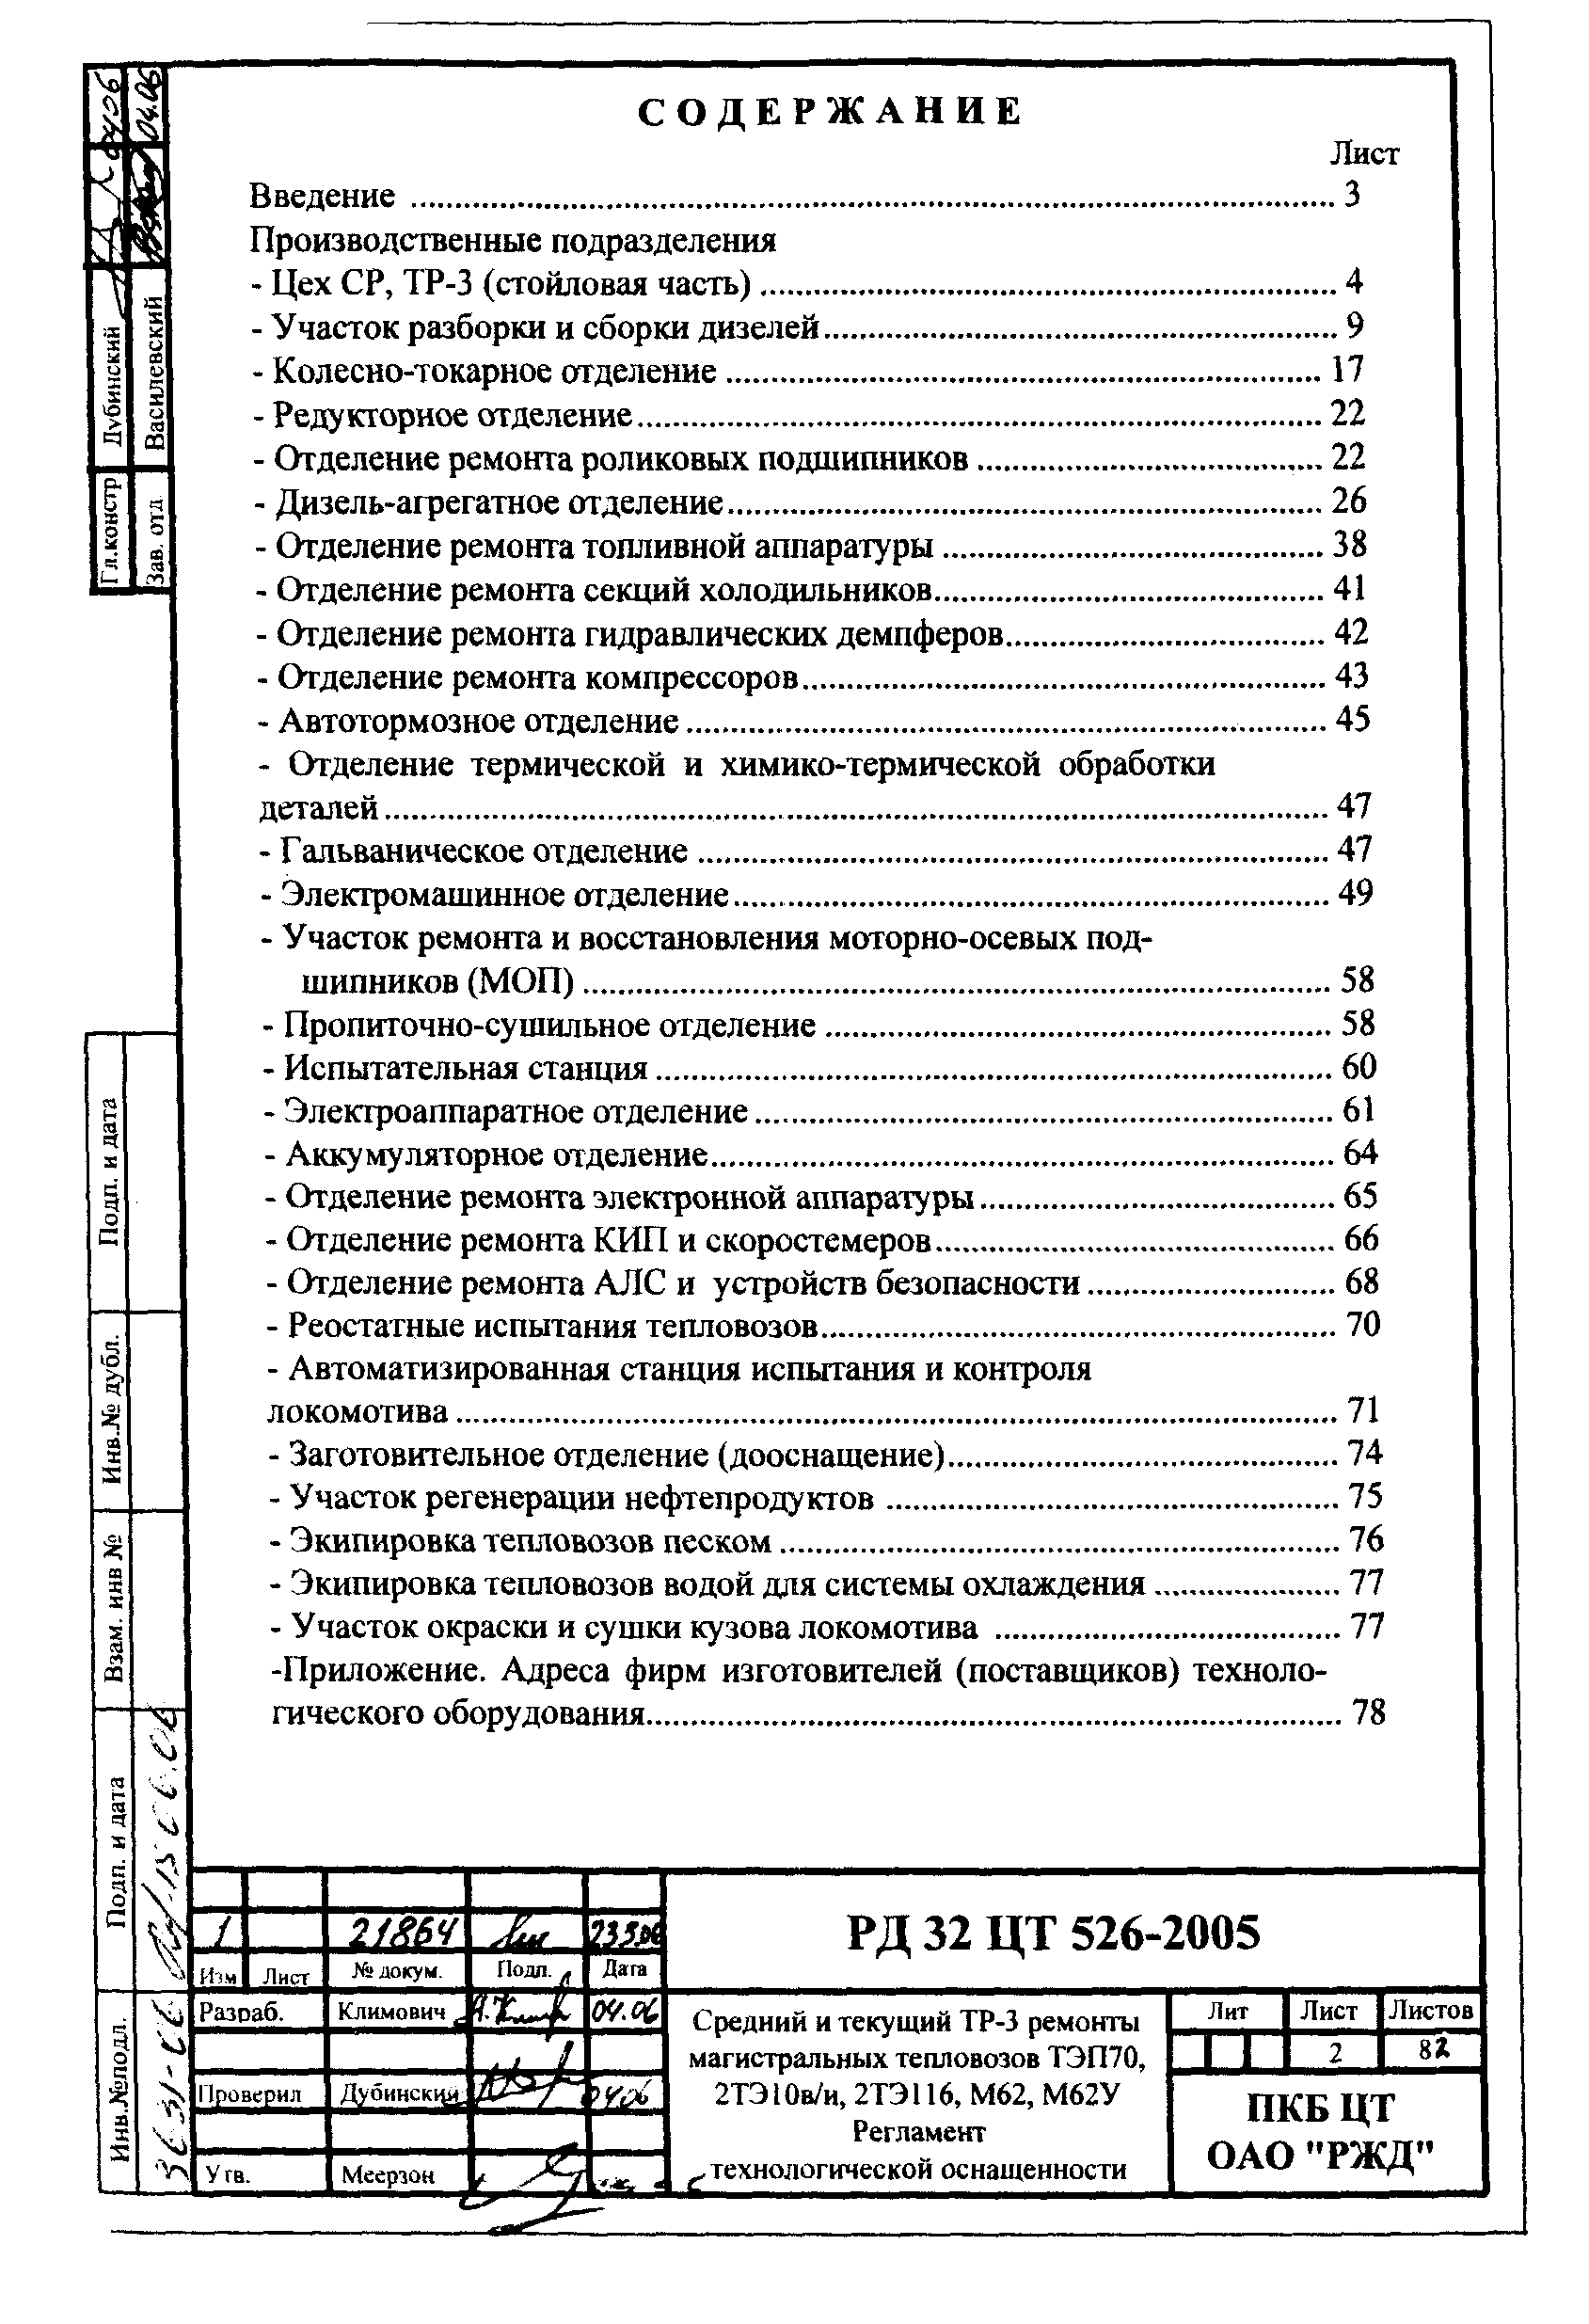 РД 32 ЦТ 526-2005